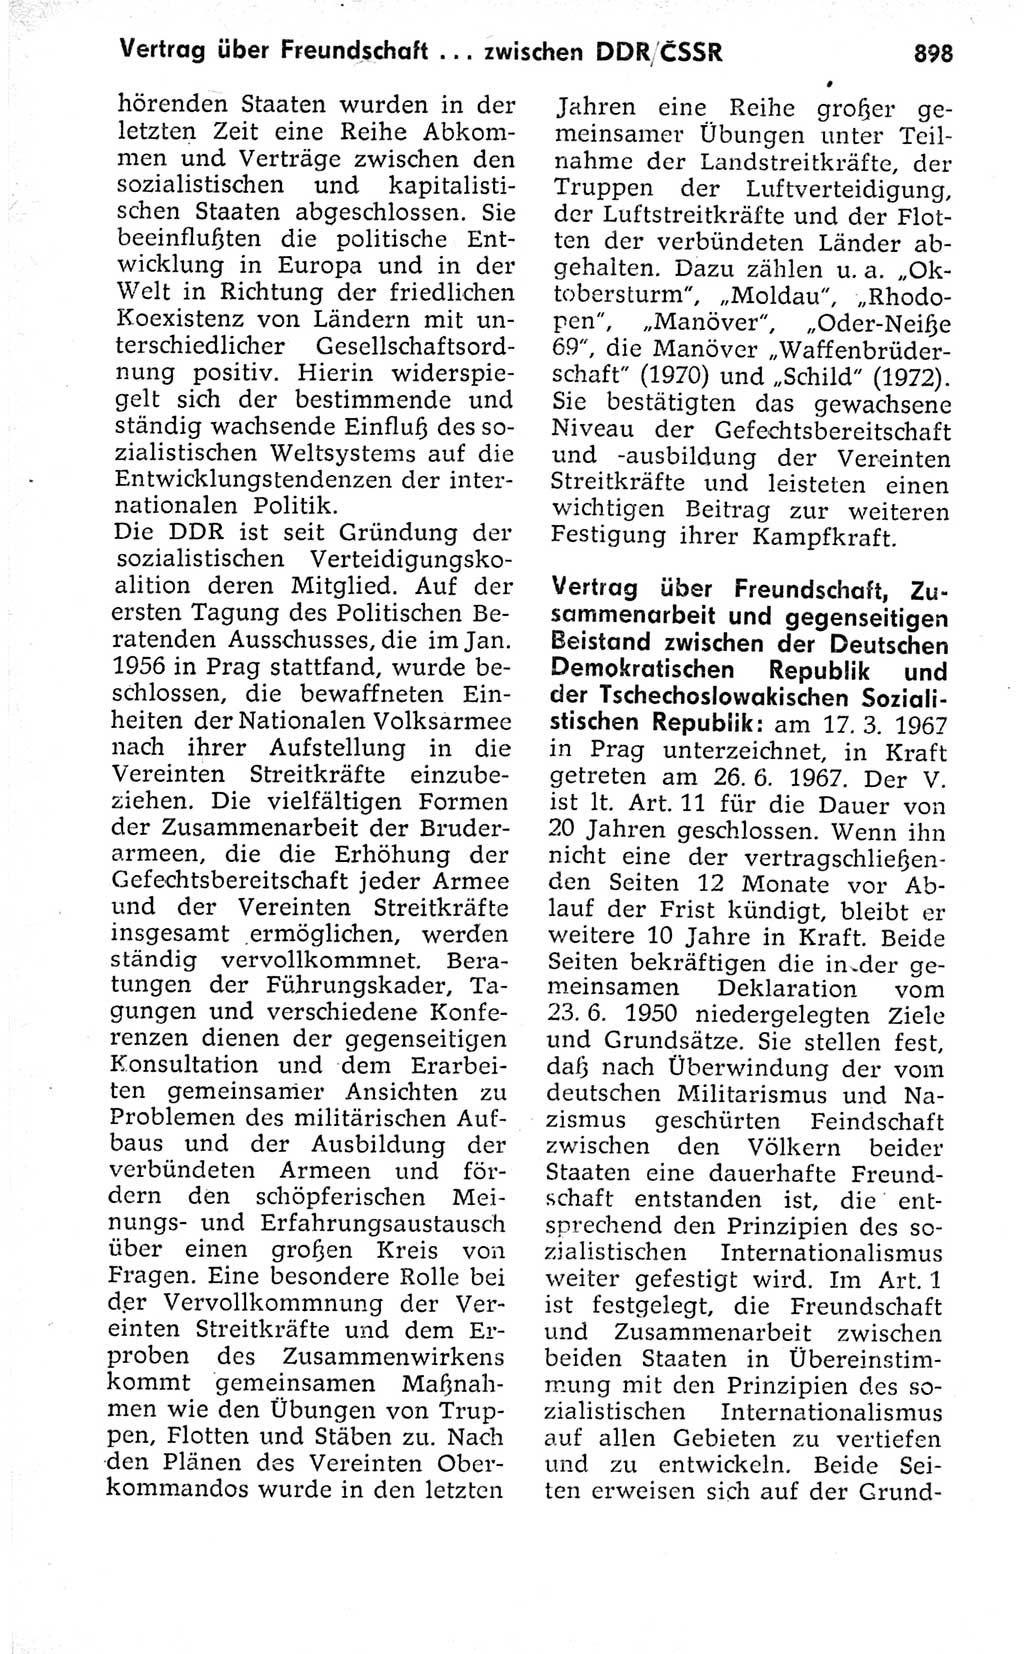 Kleines politisches Wörterbuch [Deutsche Demokratische Republik (DDR)] 1973, Seite 898 (Kl. pol. Wb. DDR 1973, S. 898)